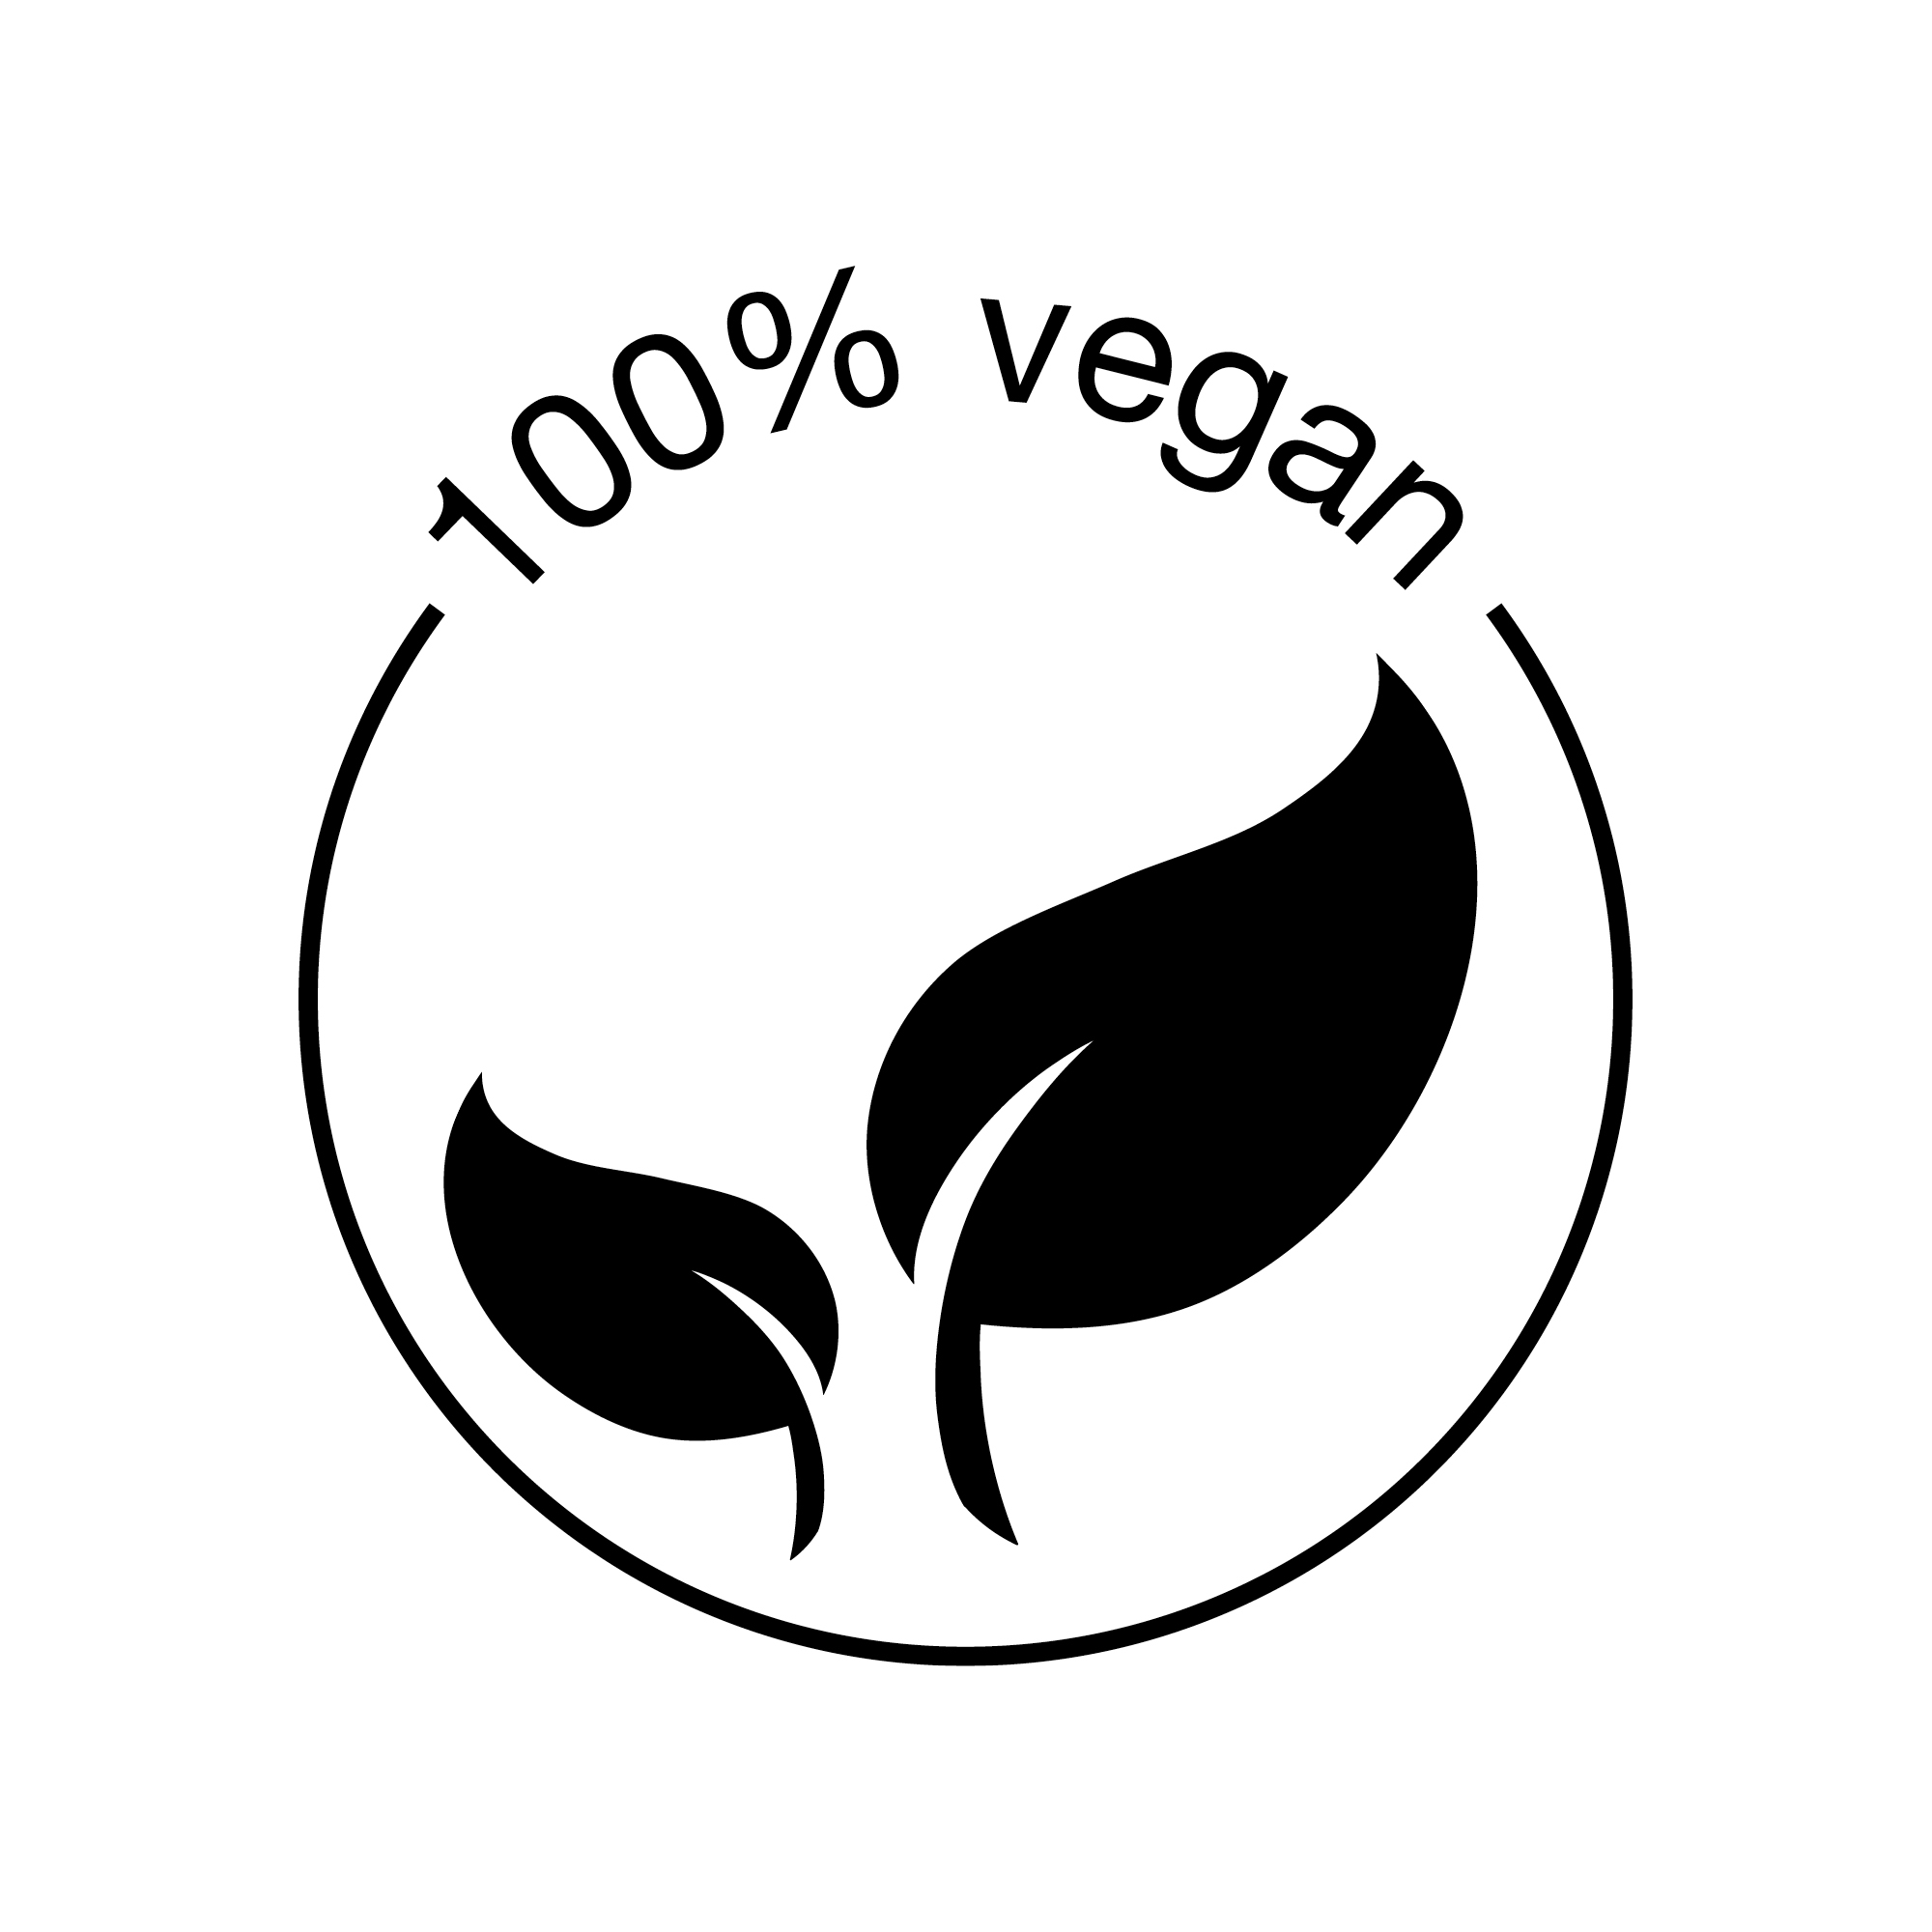 Text, 100% vegan